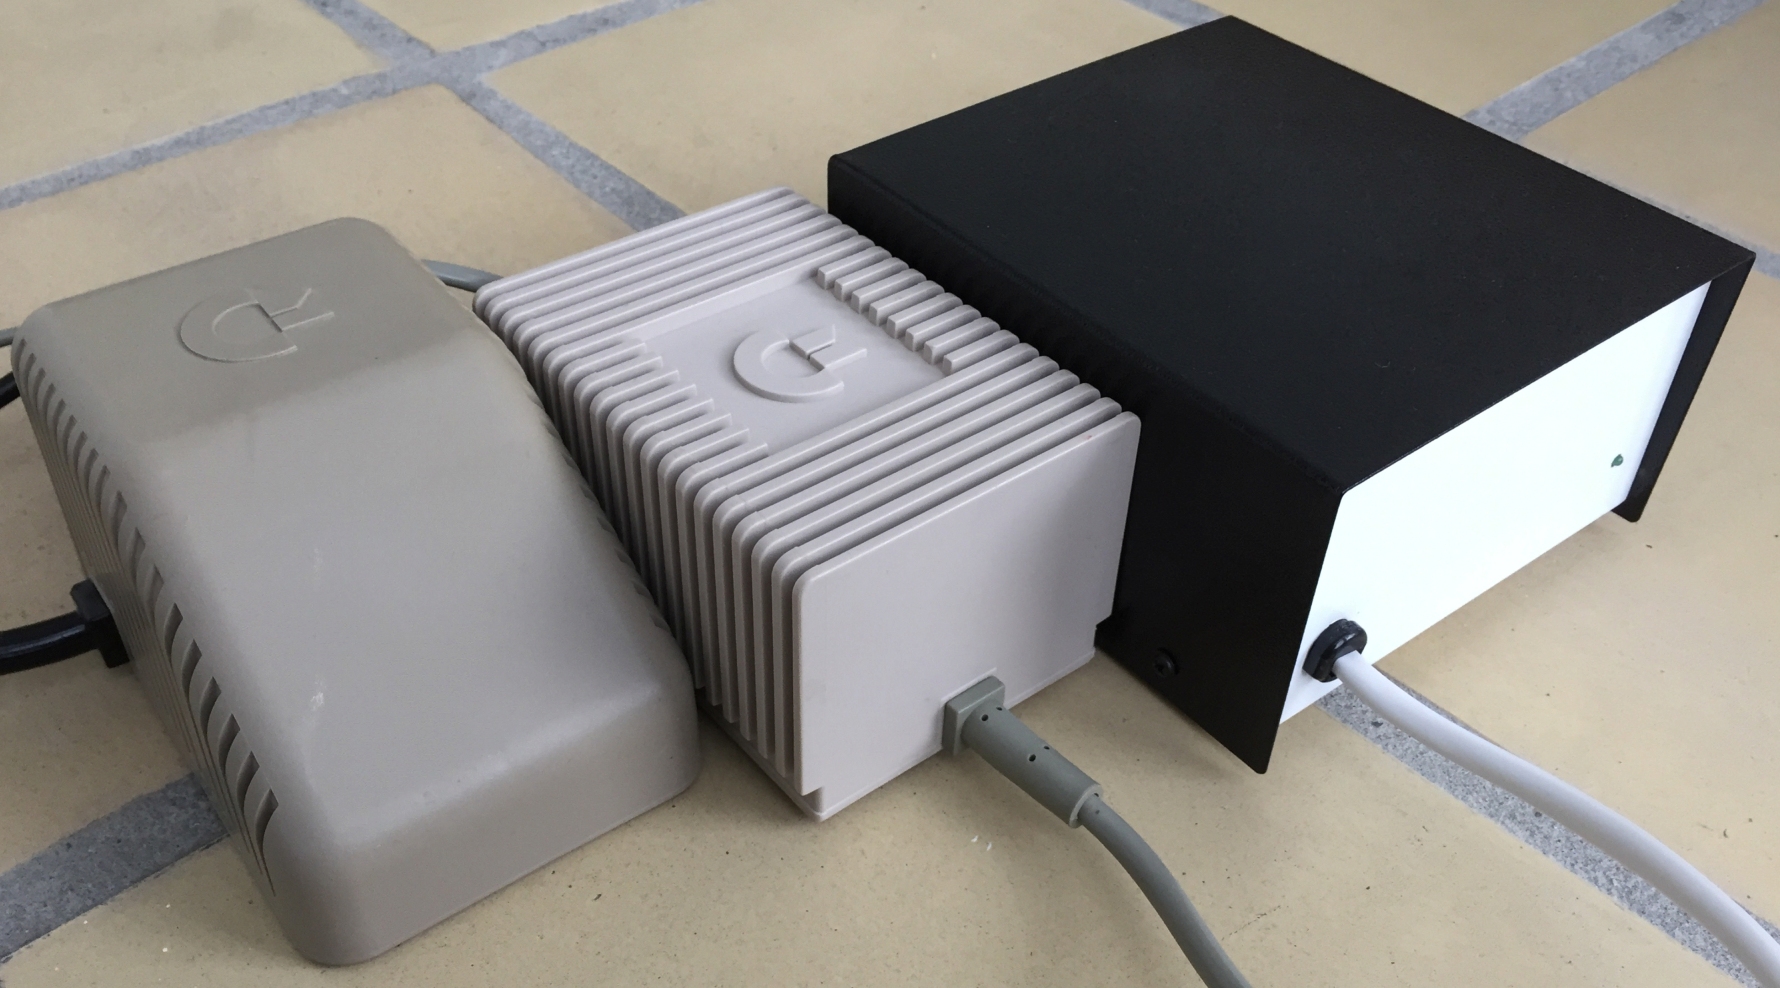 Commodore 64 power supplies including Part No. 902503-06, Part No. 902503-11, Part No. 251053-11, Ray Carlsen PSU and Ray Carlsen Computer Saver